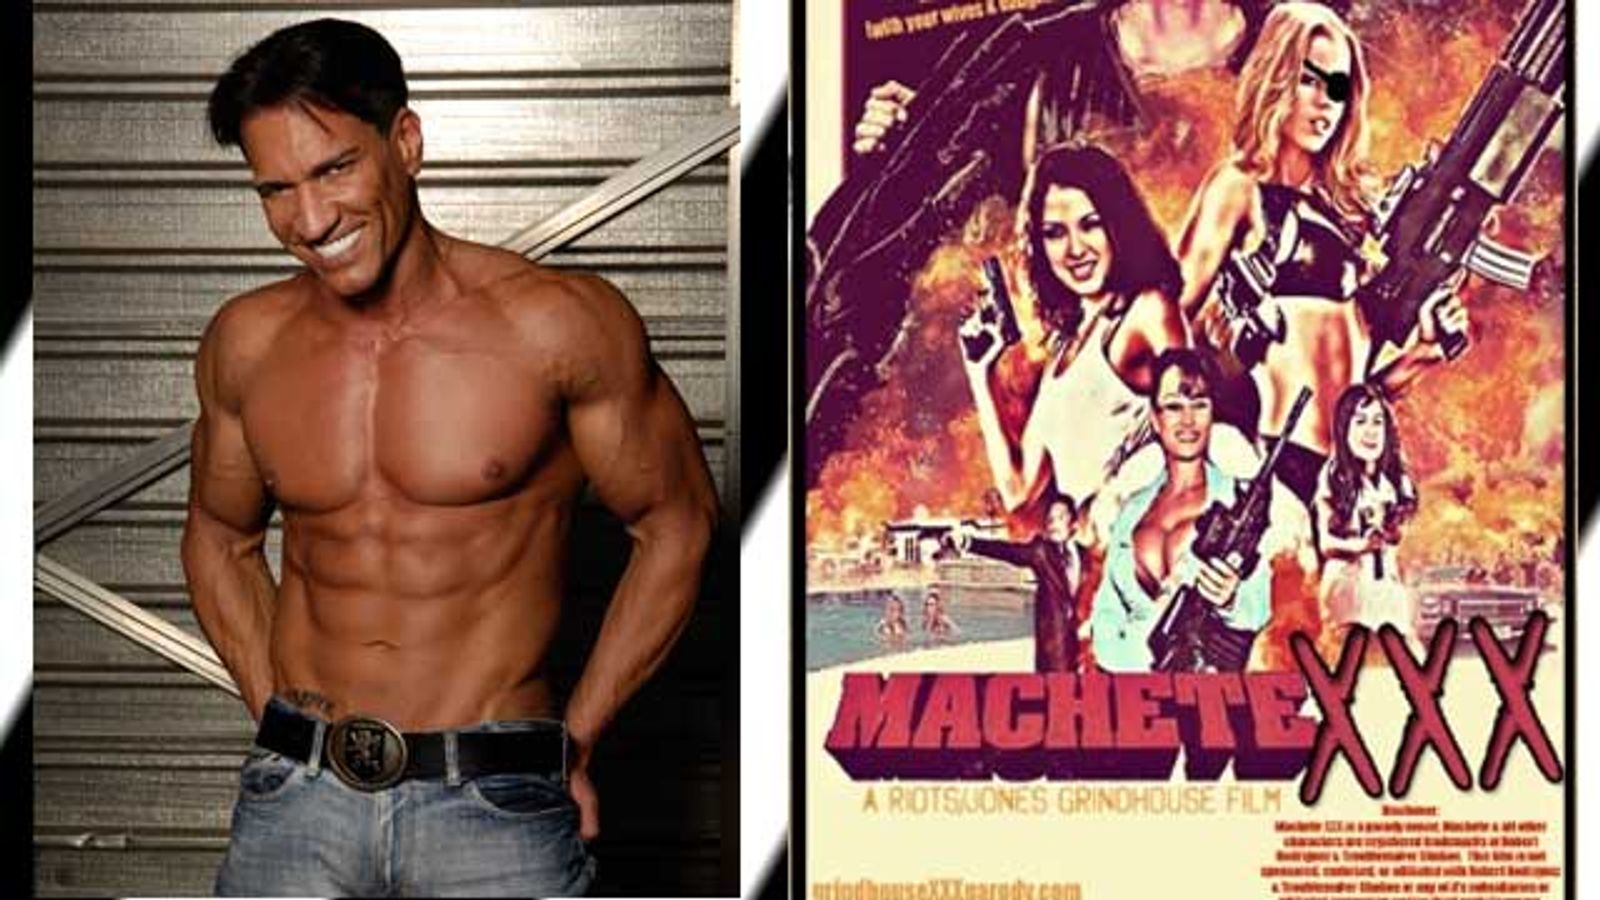 Marco Banderas to Star In Grindhouse XXX's 'Machete XXX'